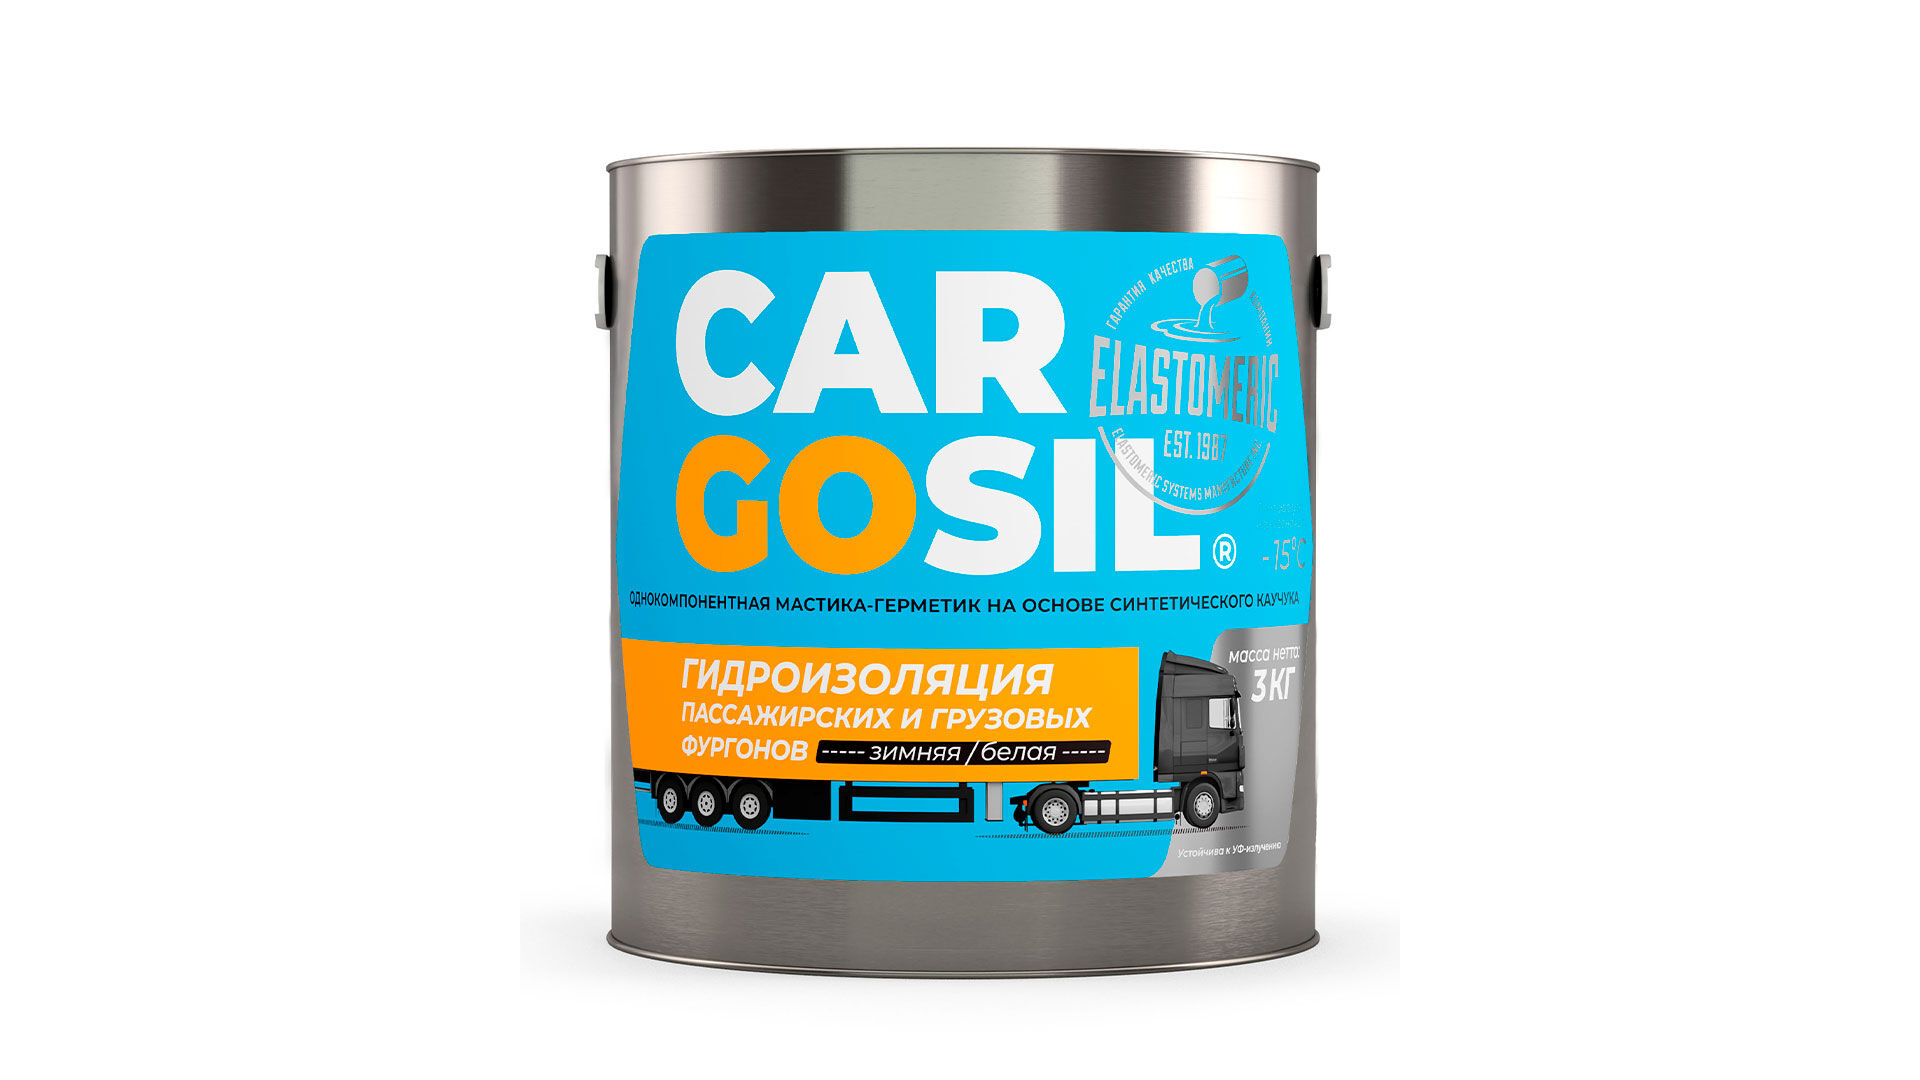 Cargosil Зимний - жидкая резина для устранения протечек на крышах фургонов и будок. Белый